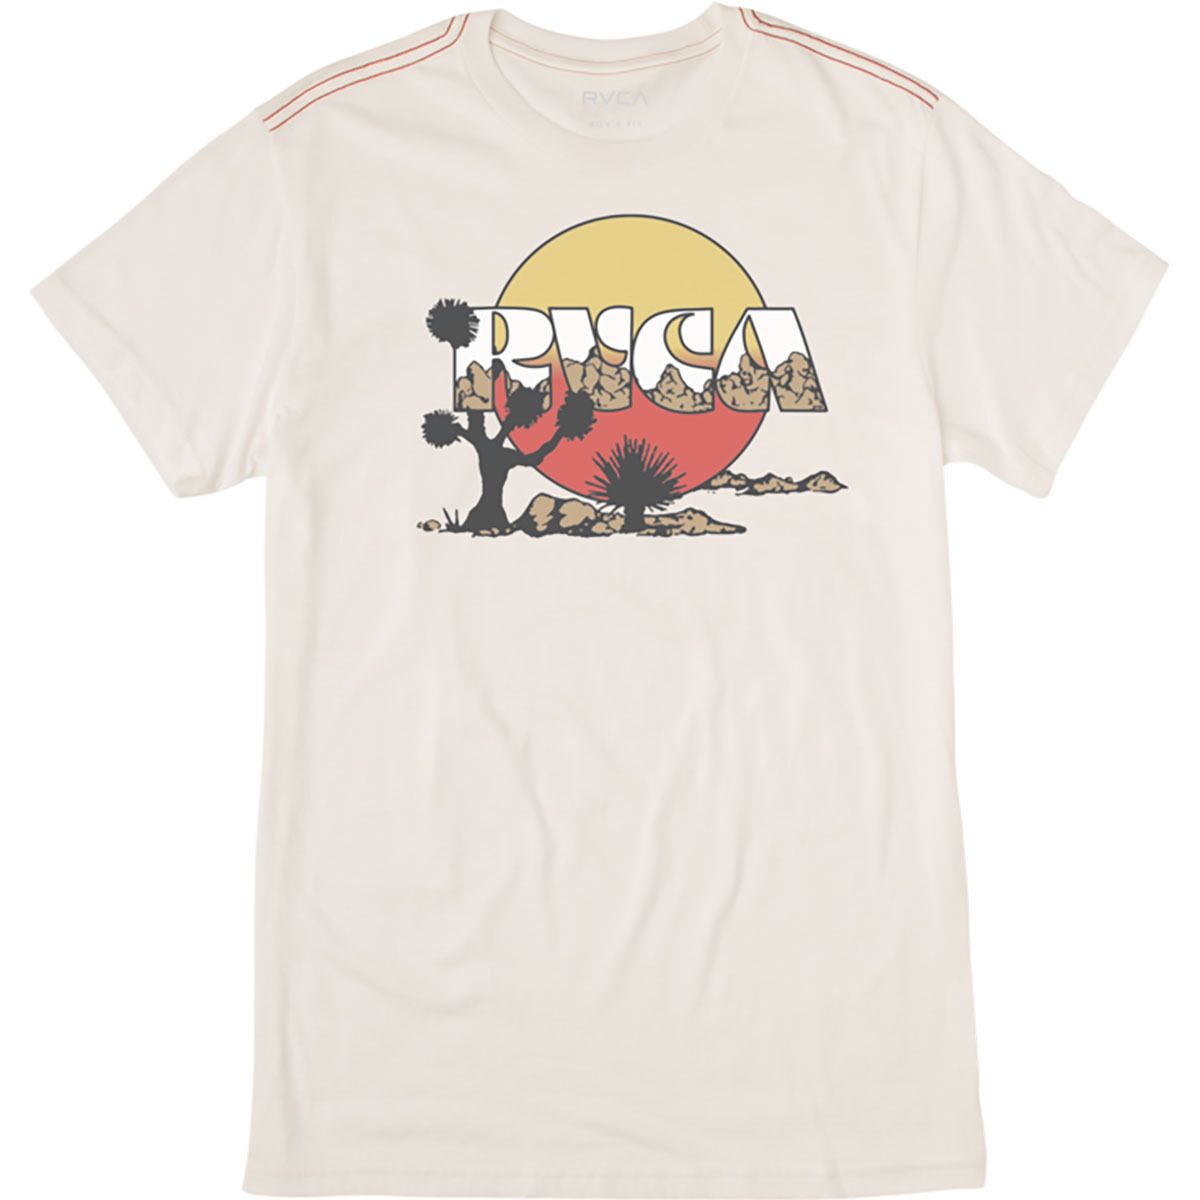 RVCA Jay Tree Short-Sleeve Graphic T-Shirt - Boys'